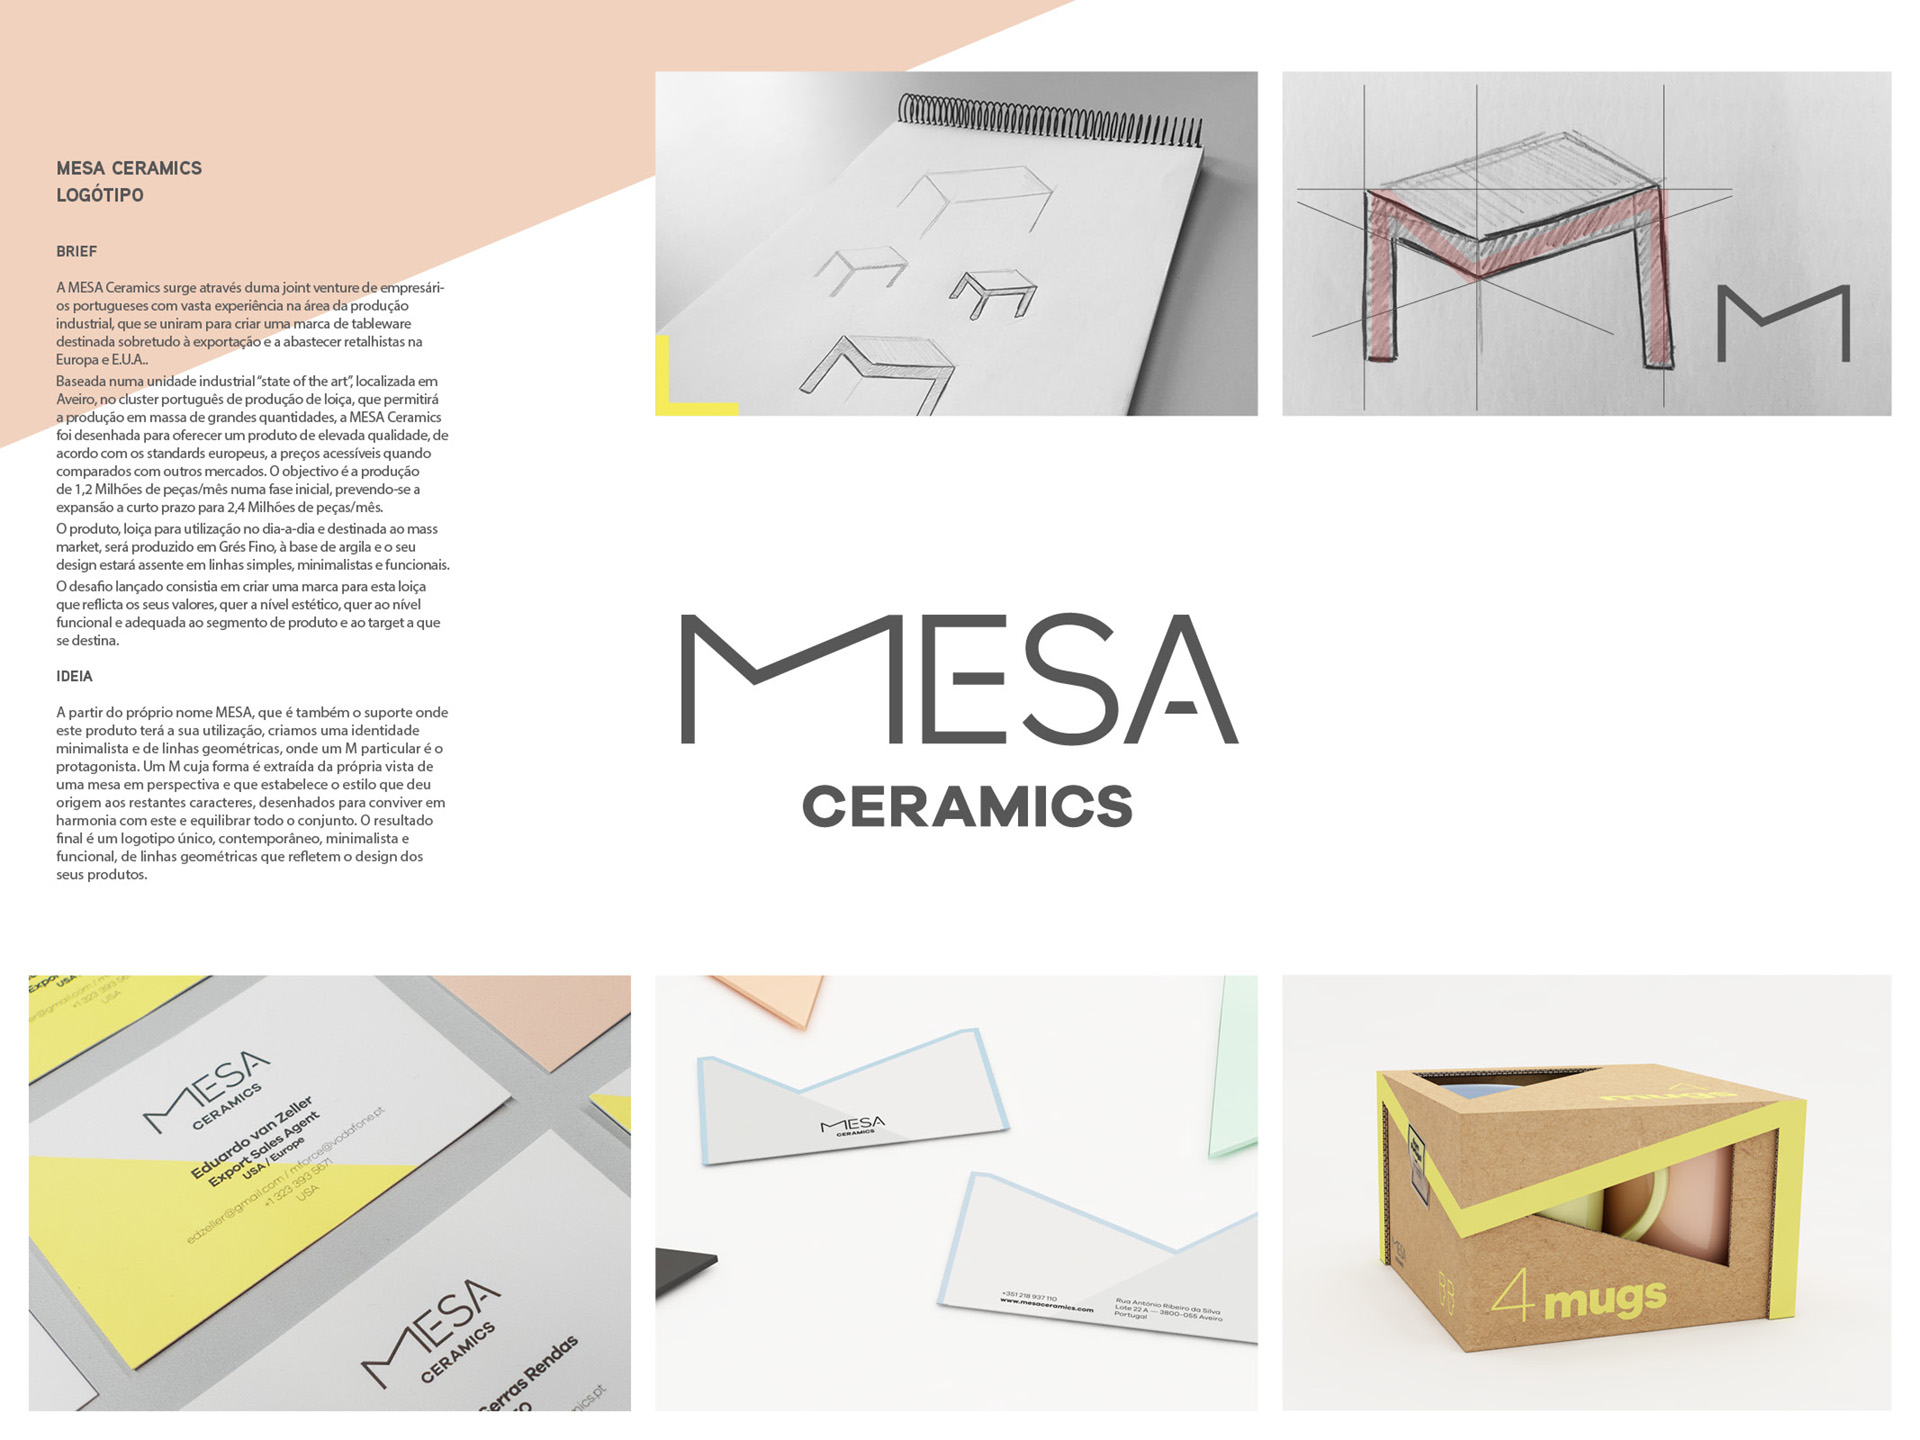 MESA Ceramics by FUEL Lisboa / Pedro Vilar - Creative Work - $i